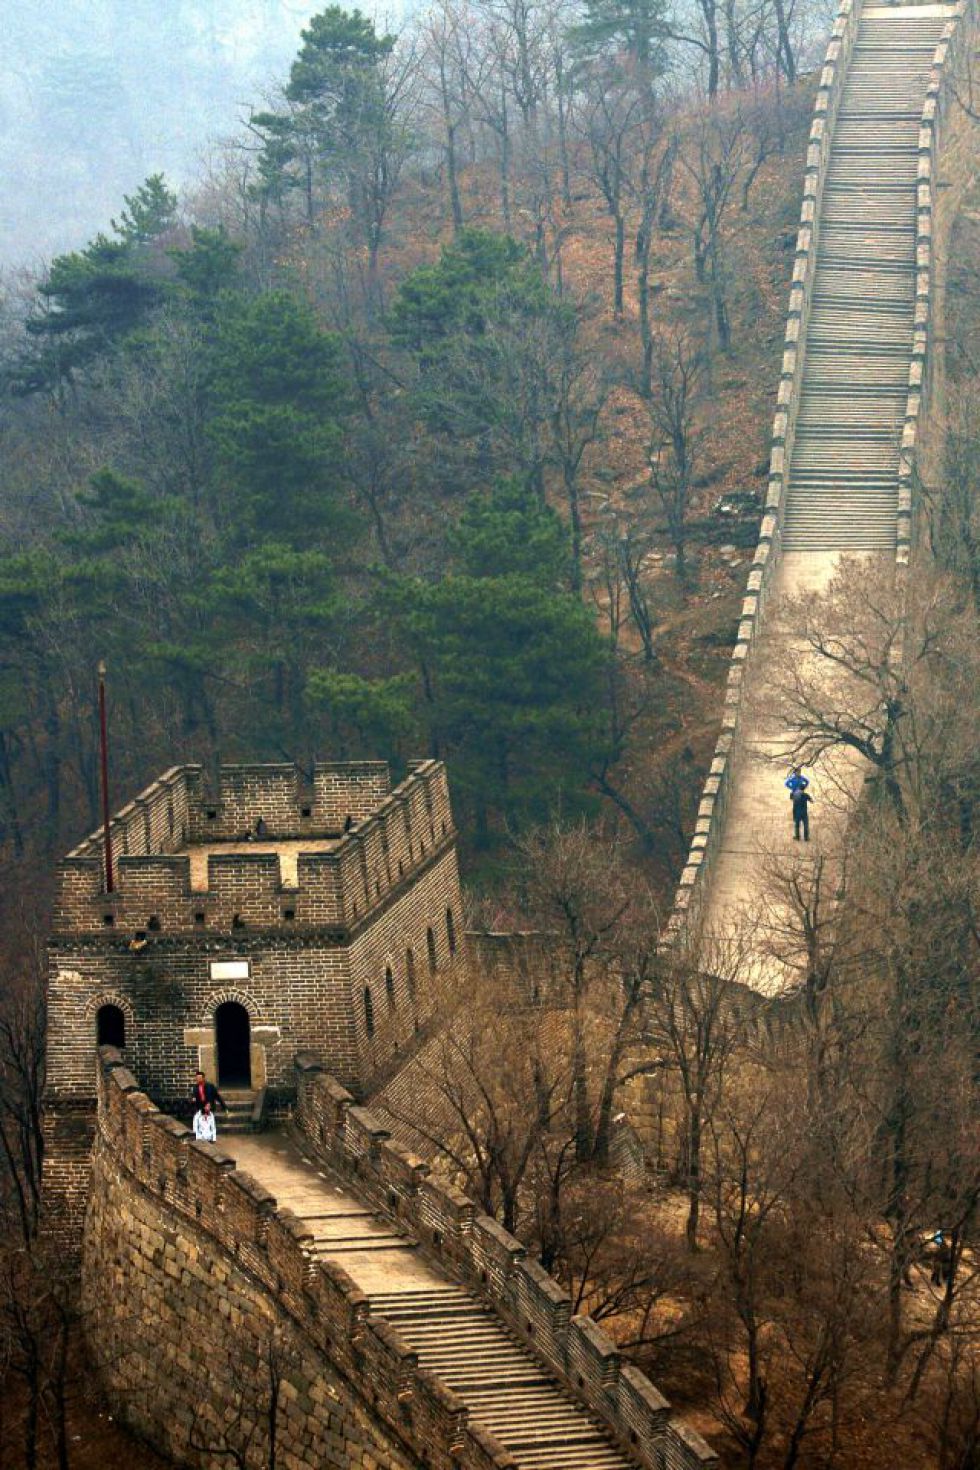 Mur chiński. Wycieczka do Chin.